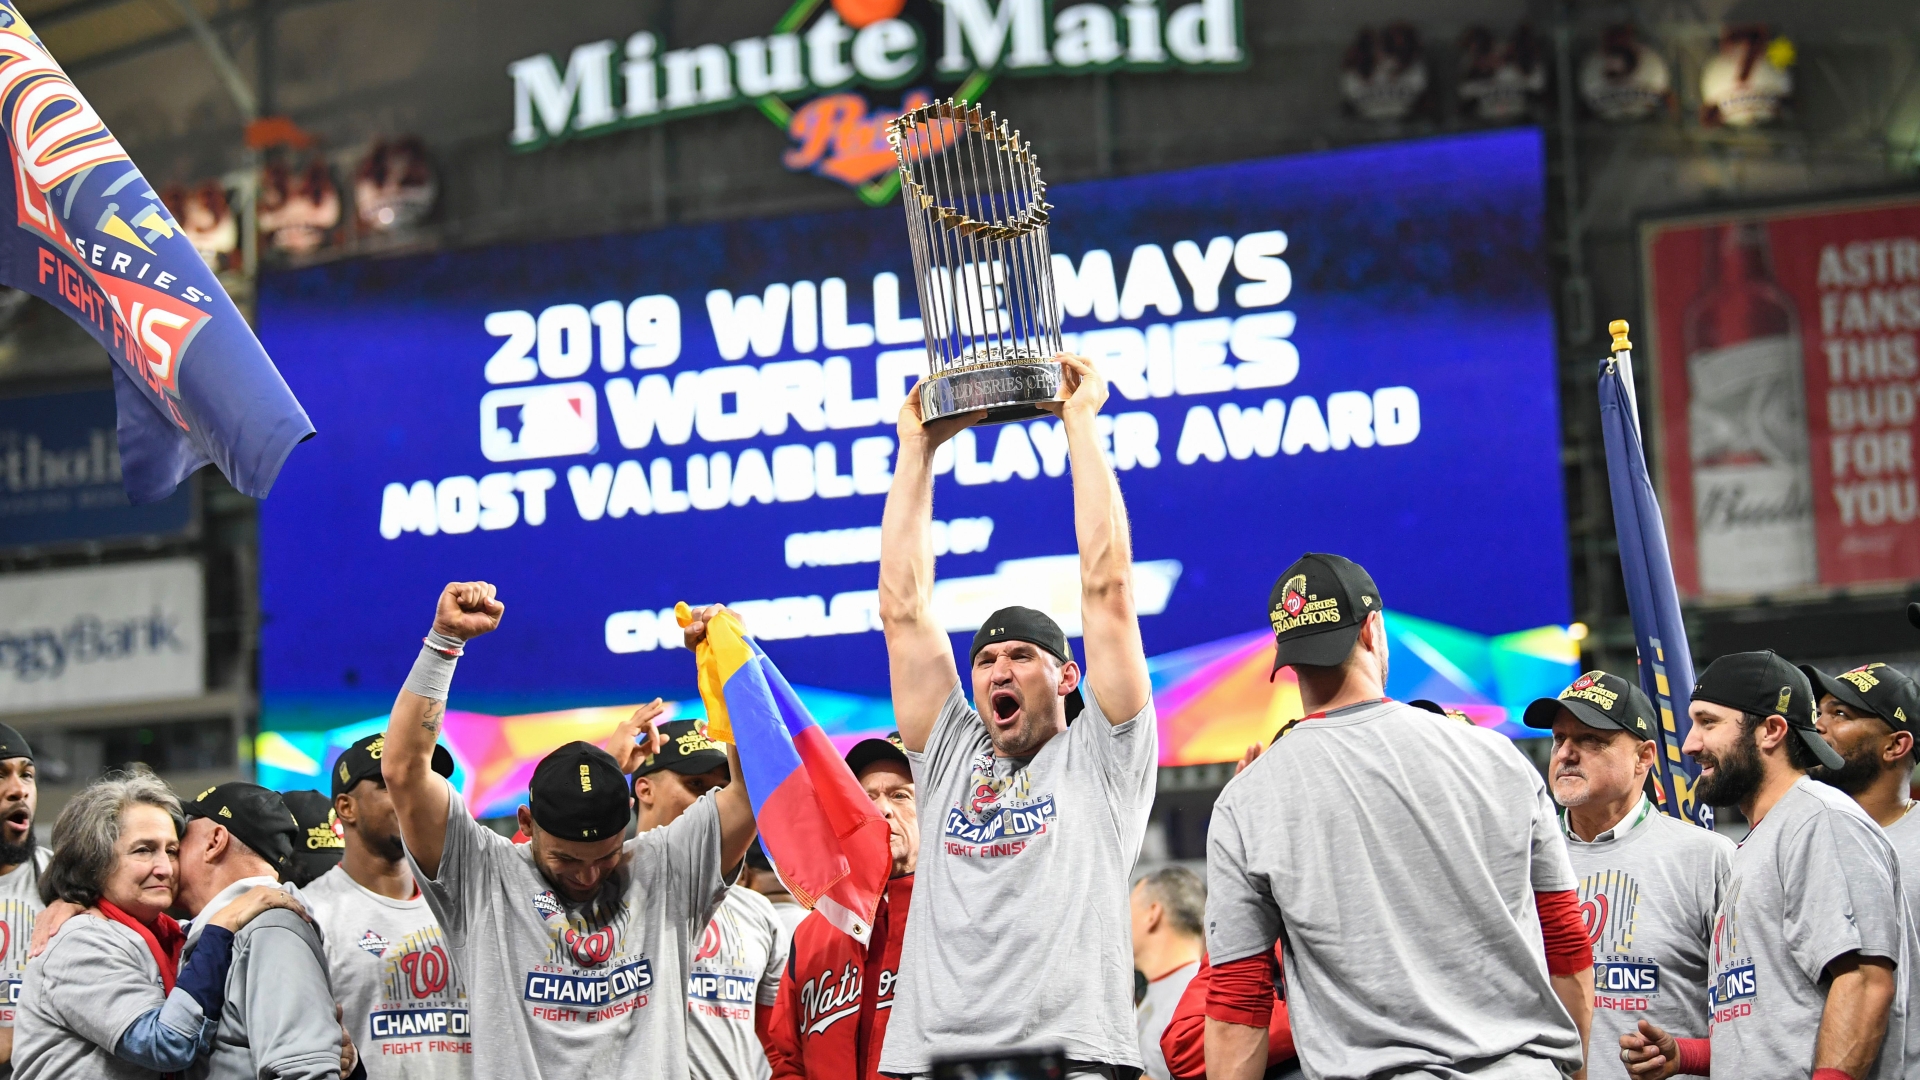 Stephen Strasburg named 2019 World Series MVP